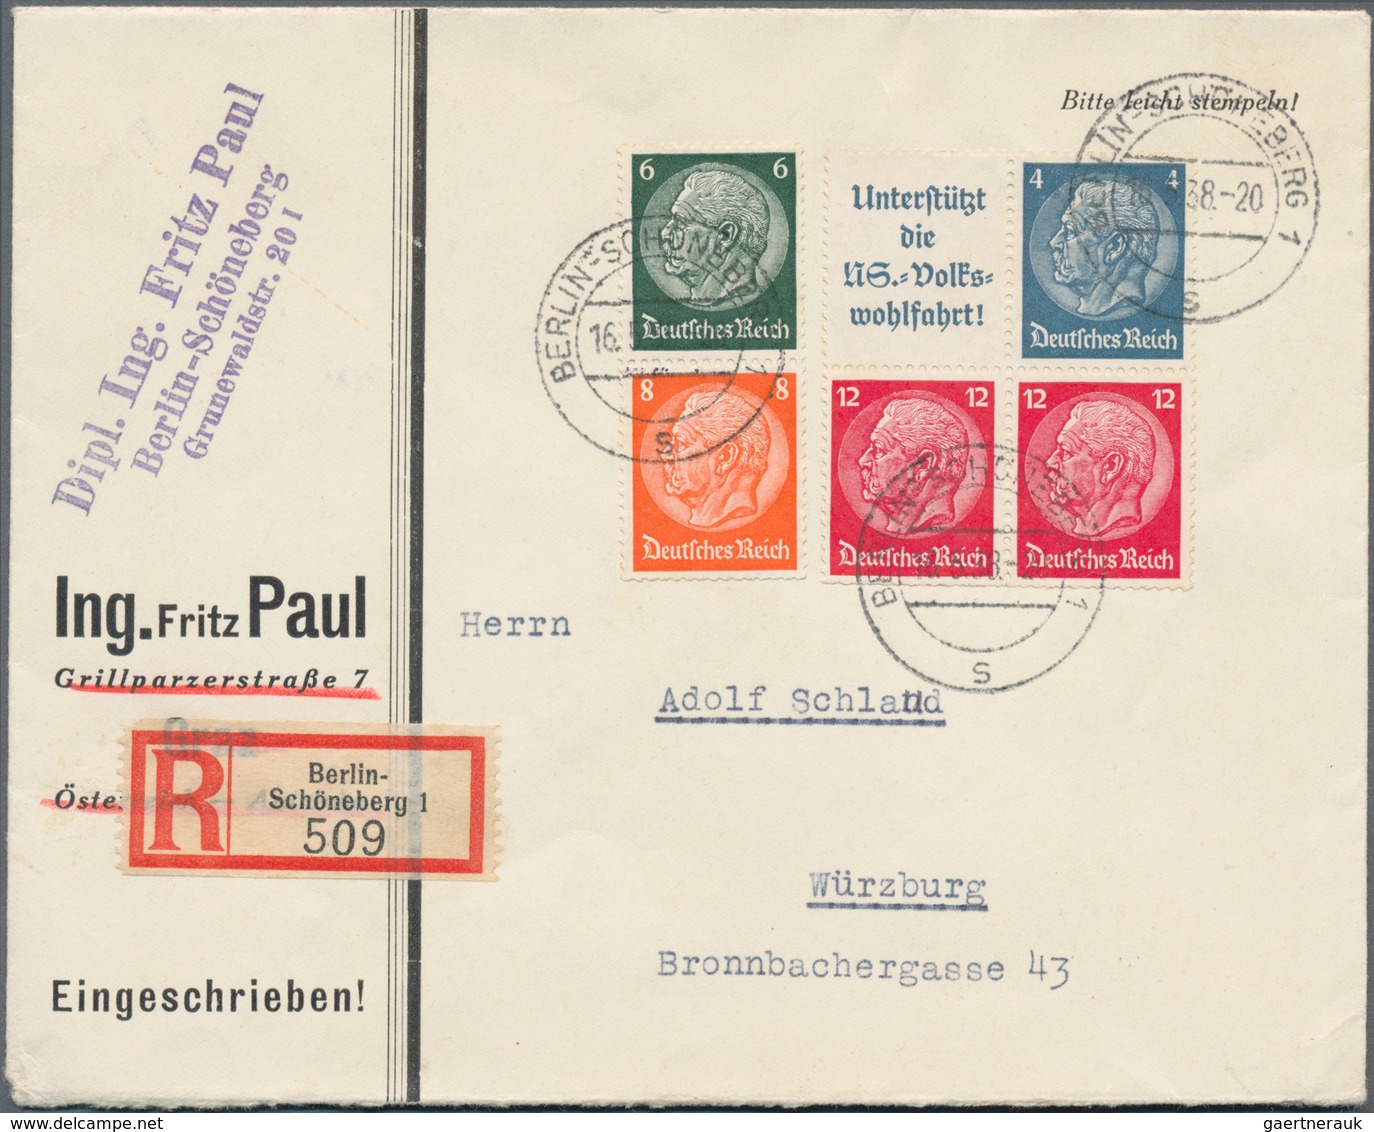 Deutsches Reich - 3. Reich: 1934/1944, vielseitige Partie von über 200 Briefen und Karten, dabei att